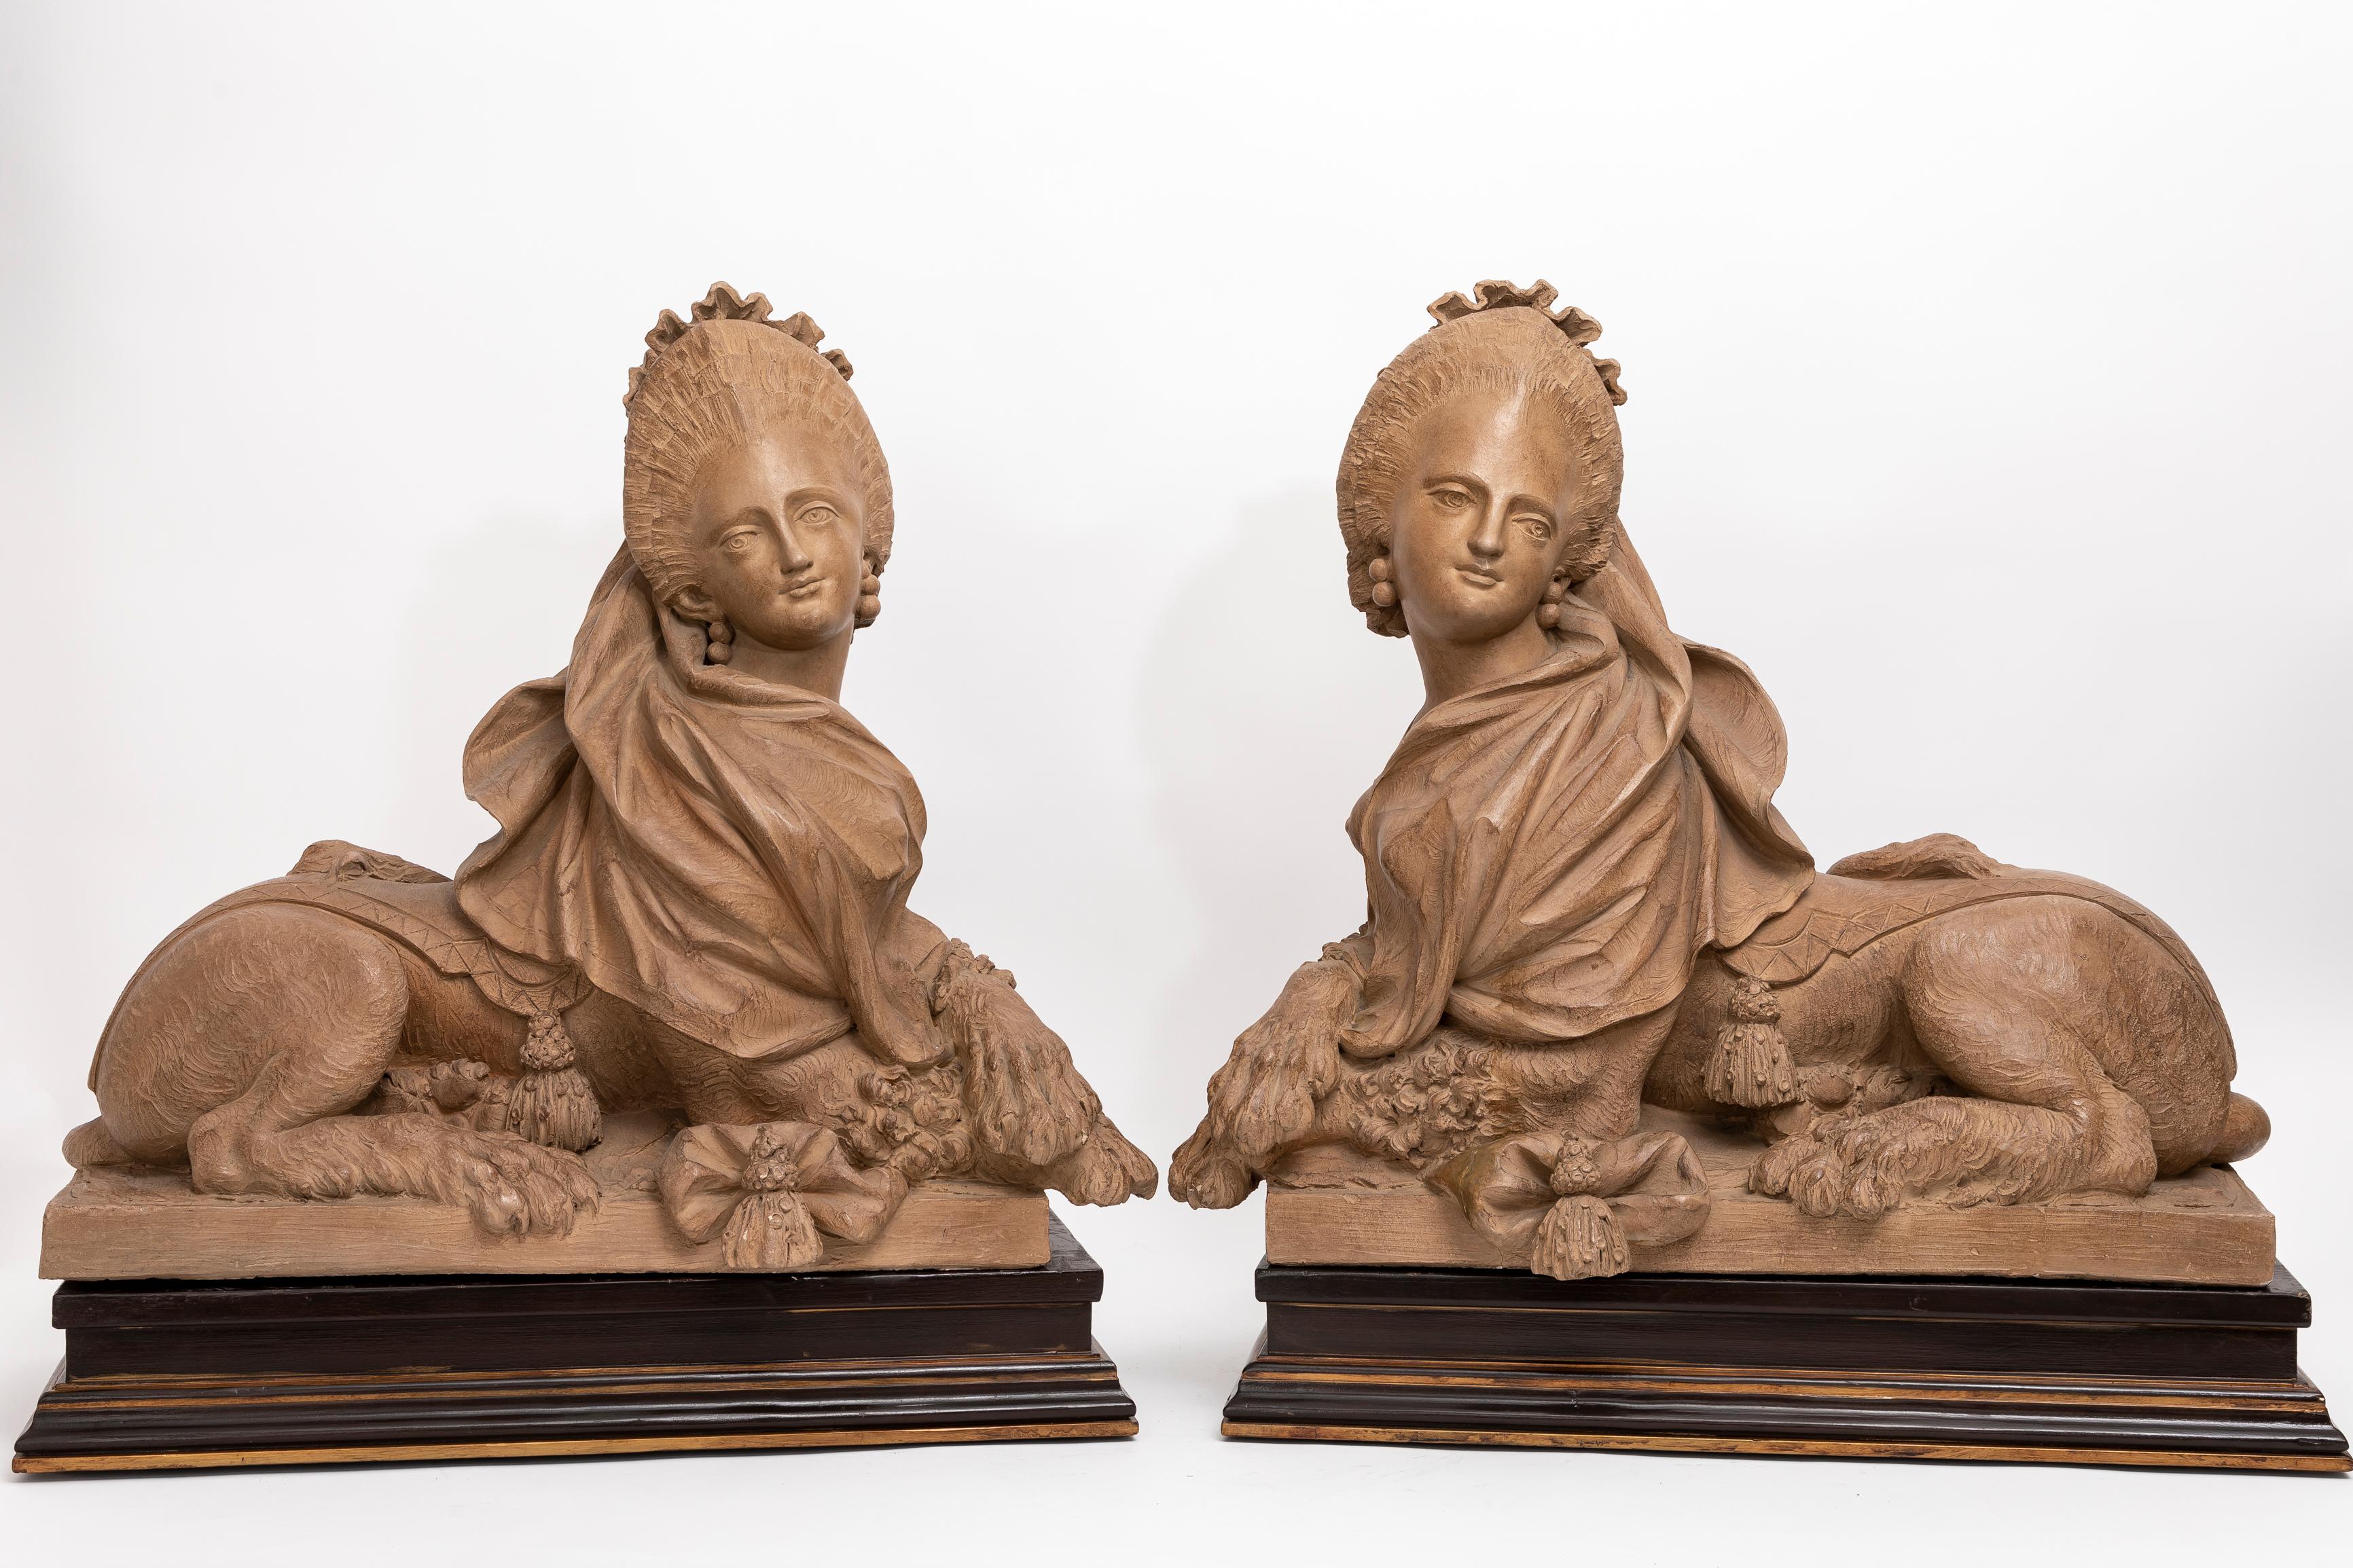 Ein massives Paar französischer Terrakotta-Skulpturen aus dem 19. Jahrhundert, die königliche Sphynxe darstellen und auf Holzsockeln stehen.  Diese beeindruckenden Sphinxen von hervorragender Qualität, die auf einem Holzsockel ruhen, verkörpern die